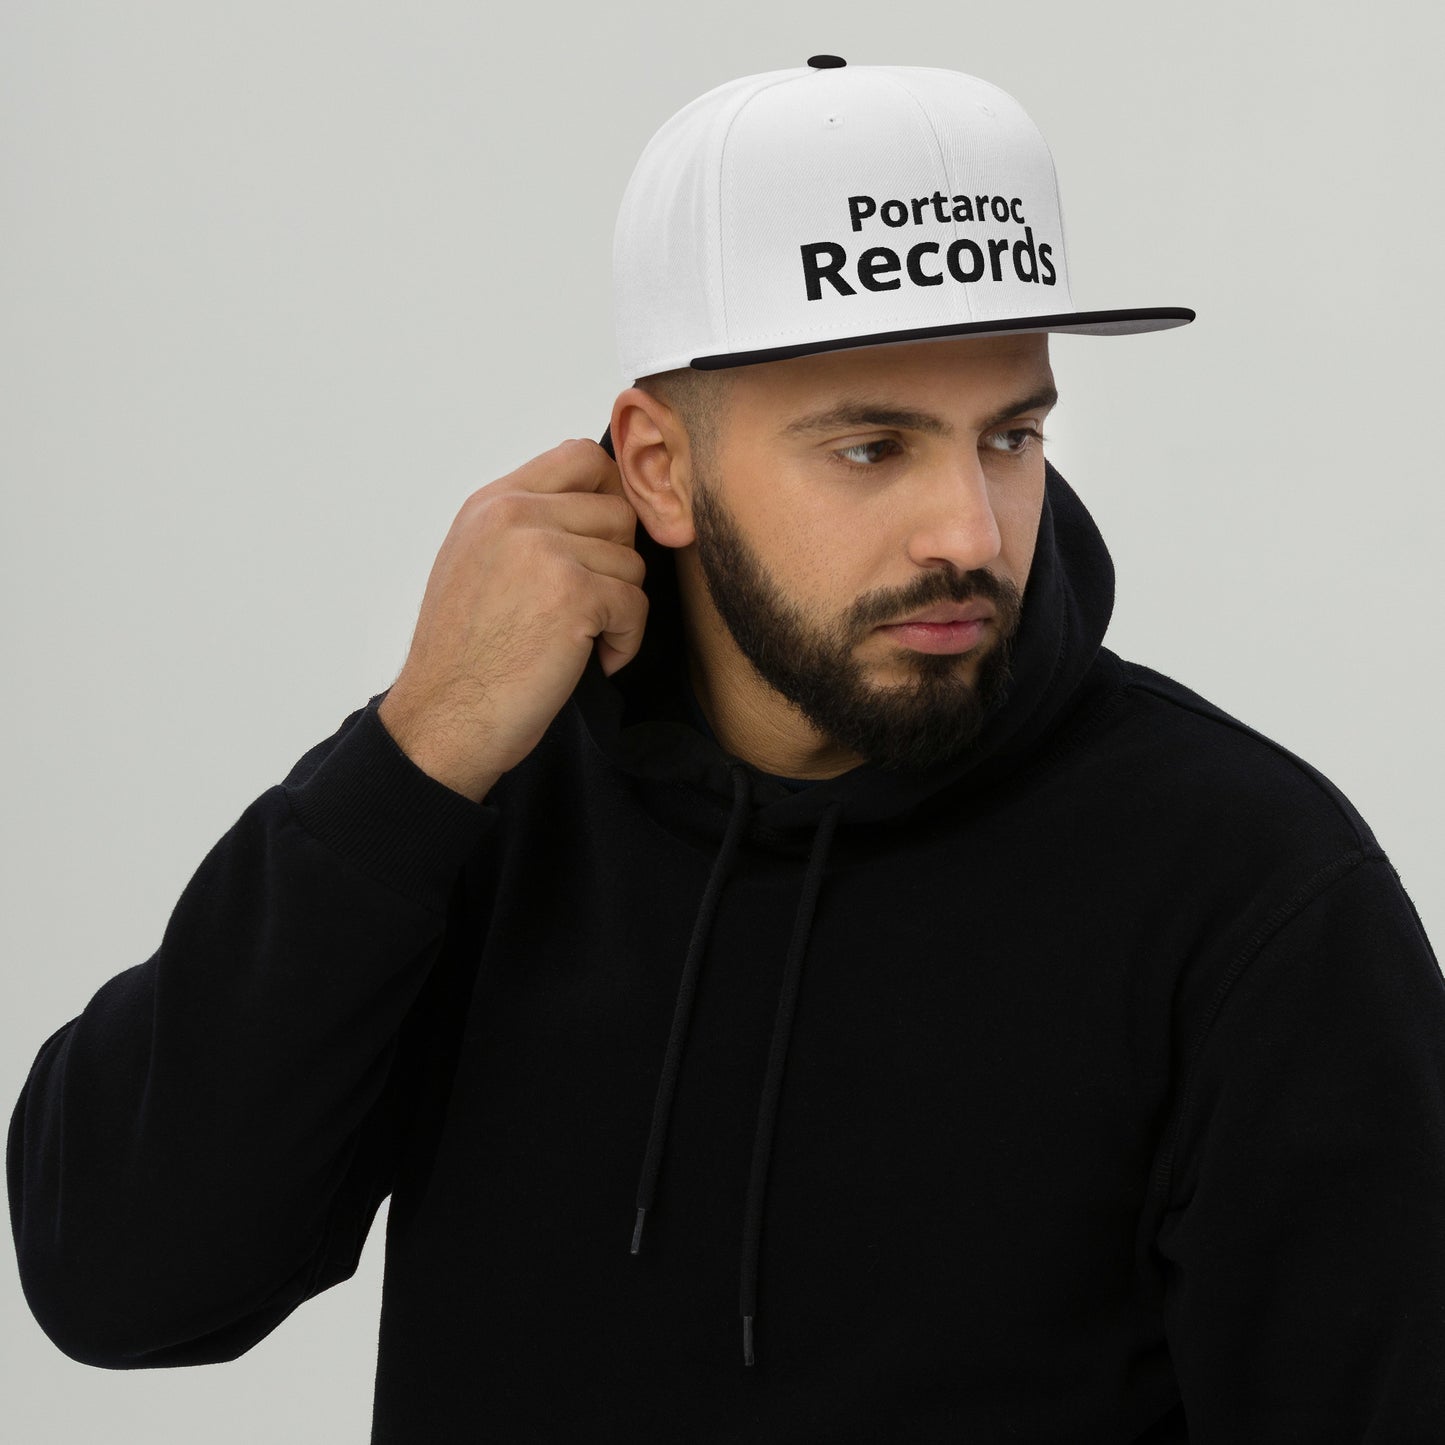 Portaroc Records Snapback Hat